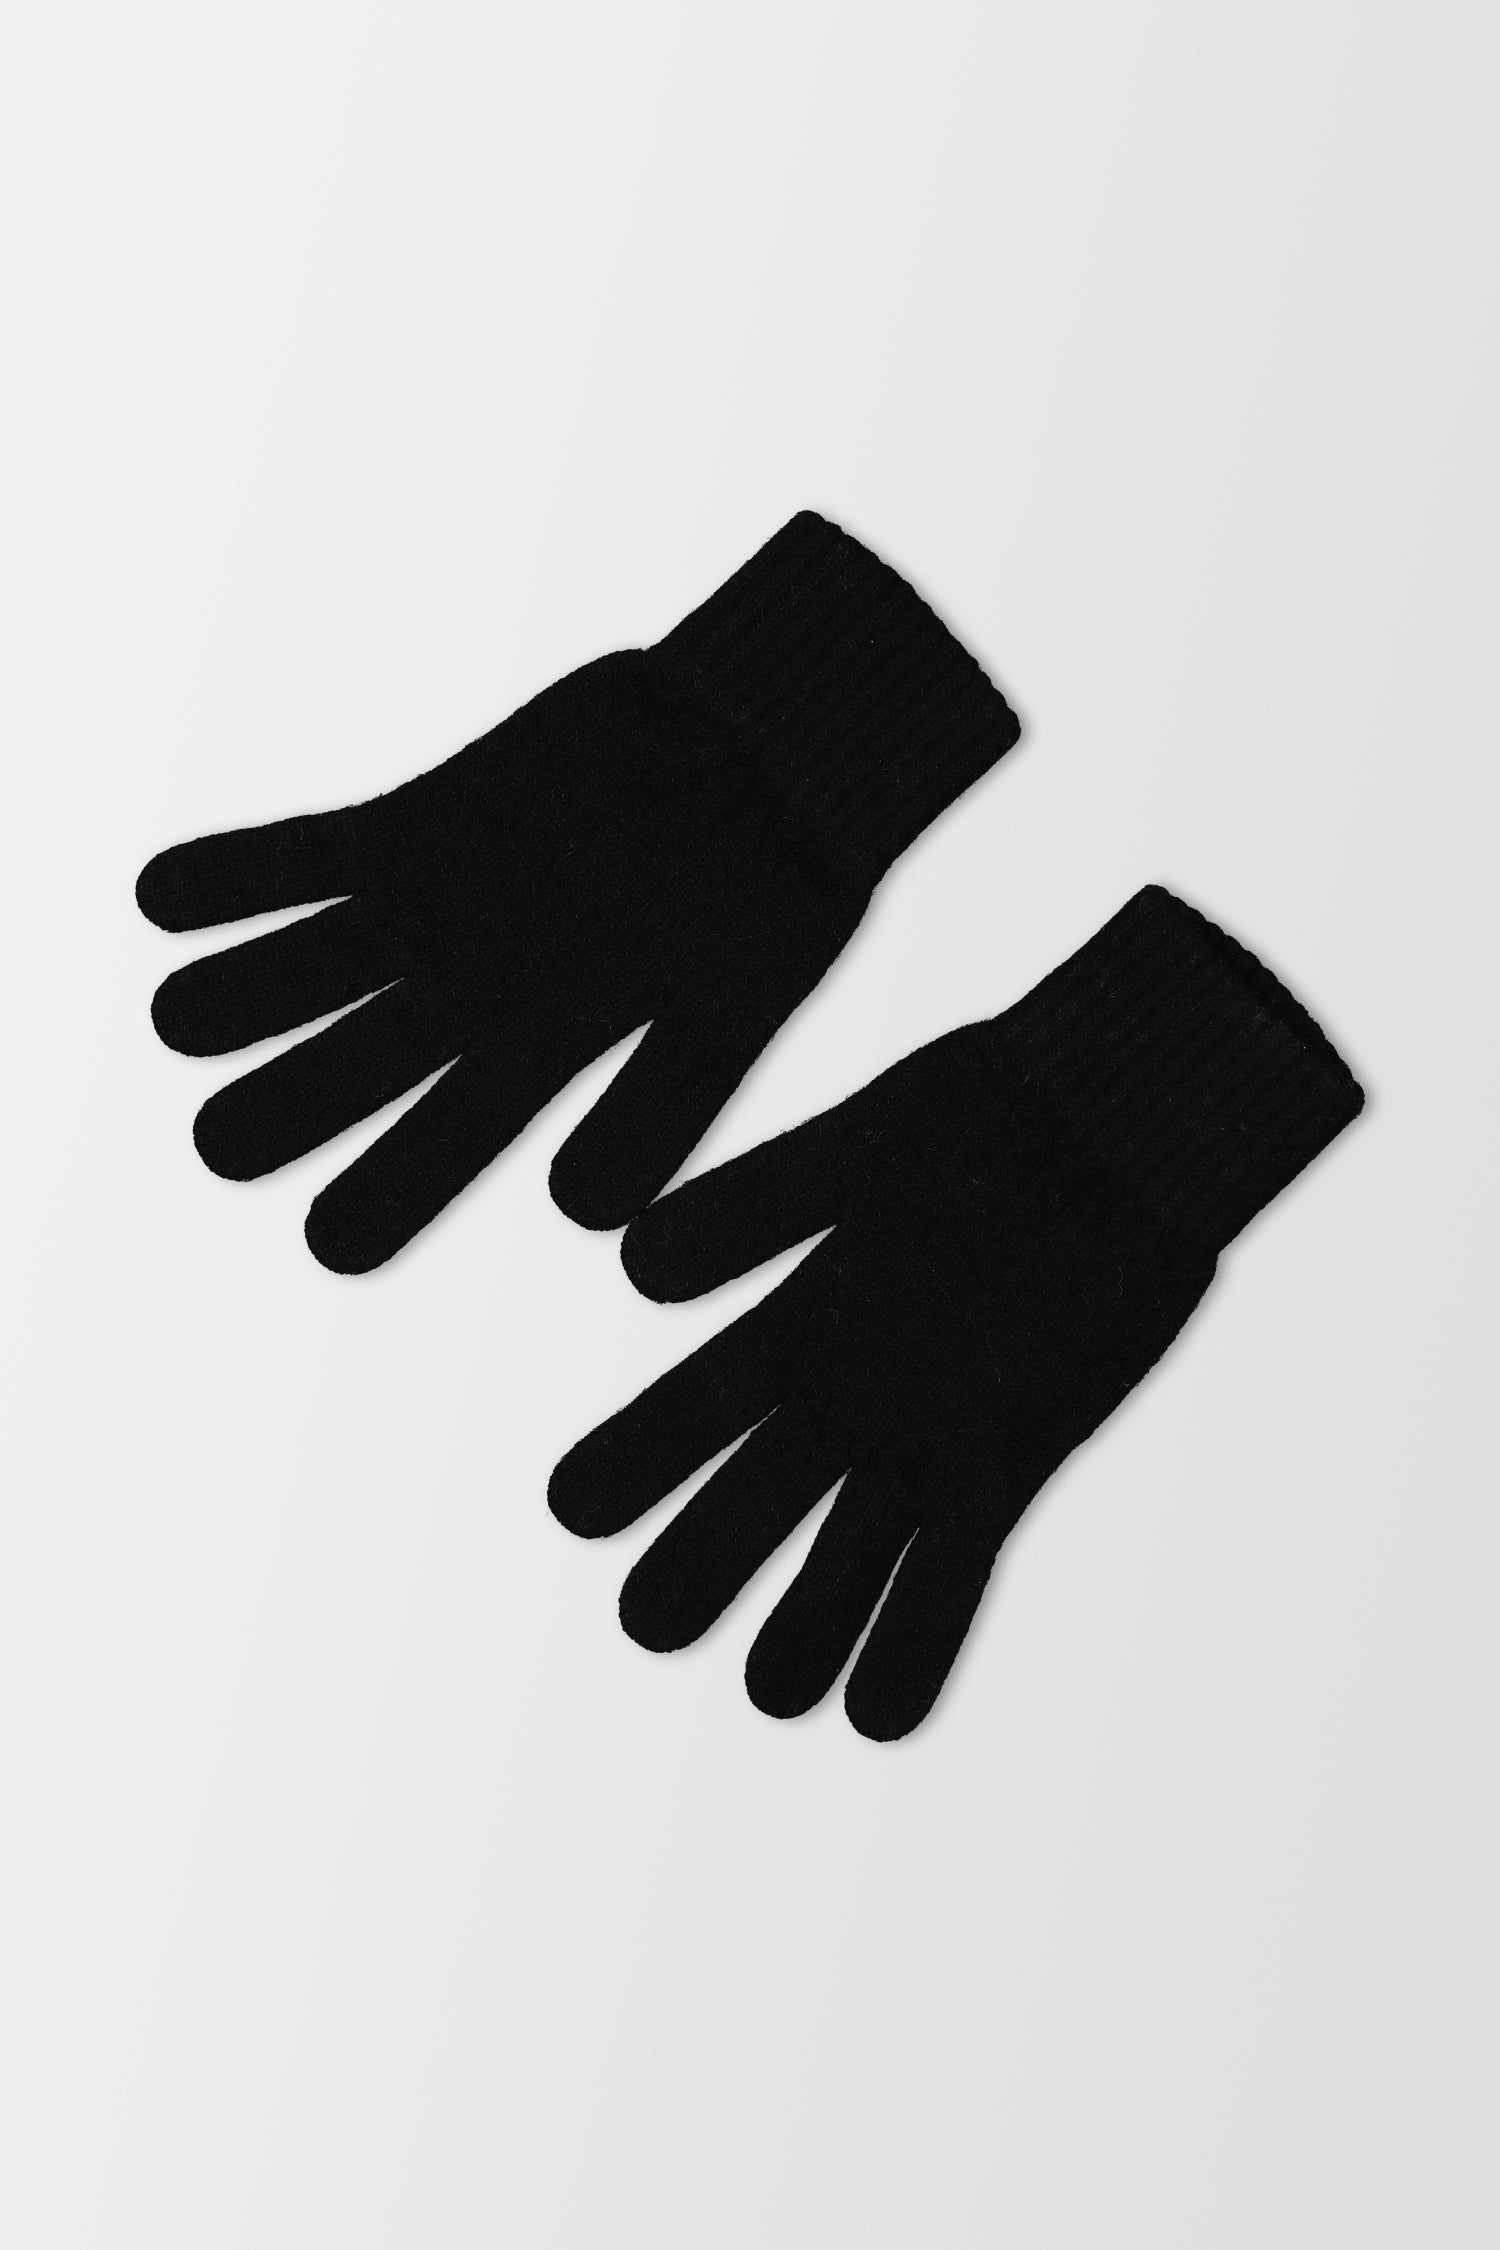 Joshua Ellis Knitted Black Gloves